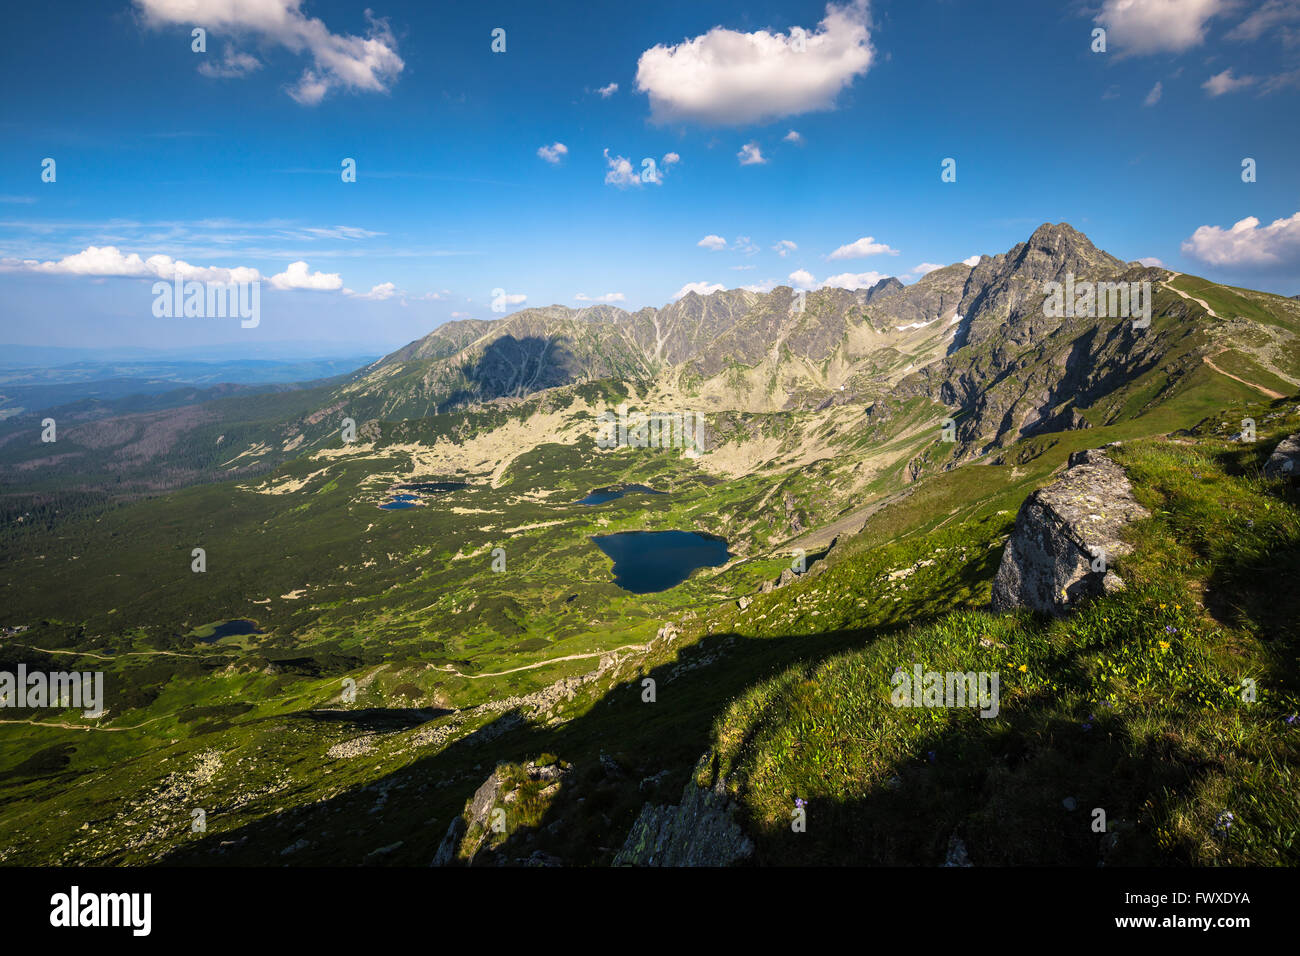 Dei monti Tatra, Polonia, vista a valle, Gasienicowa Swinica mount e gruppo di laghi di origine glaciale Foto Stock